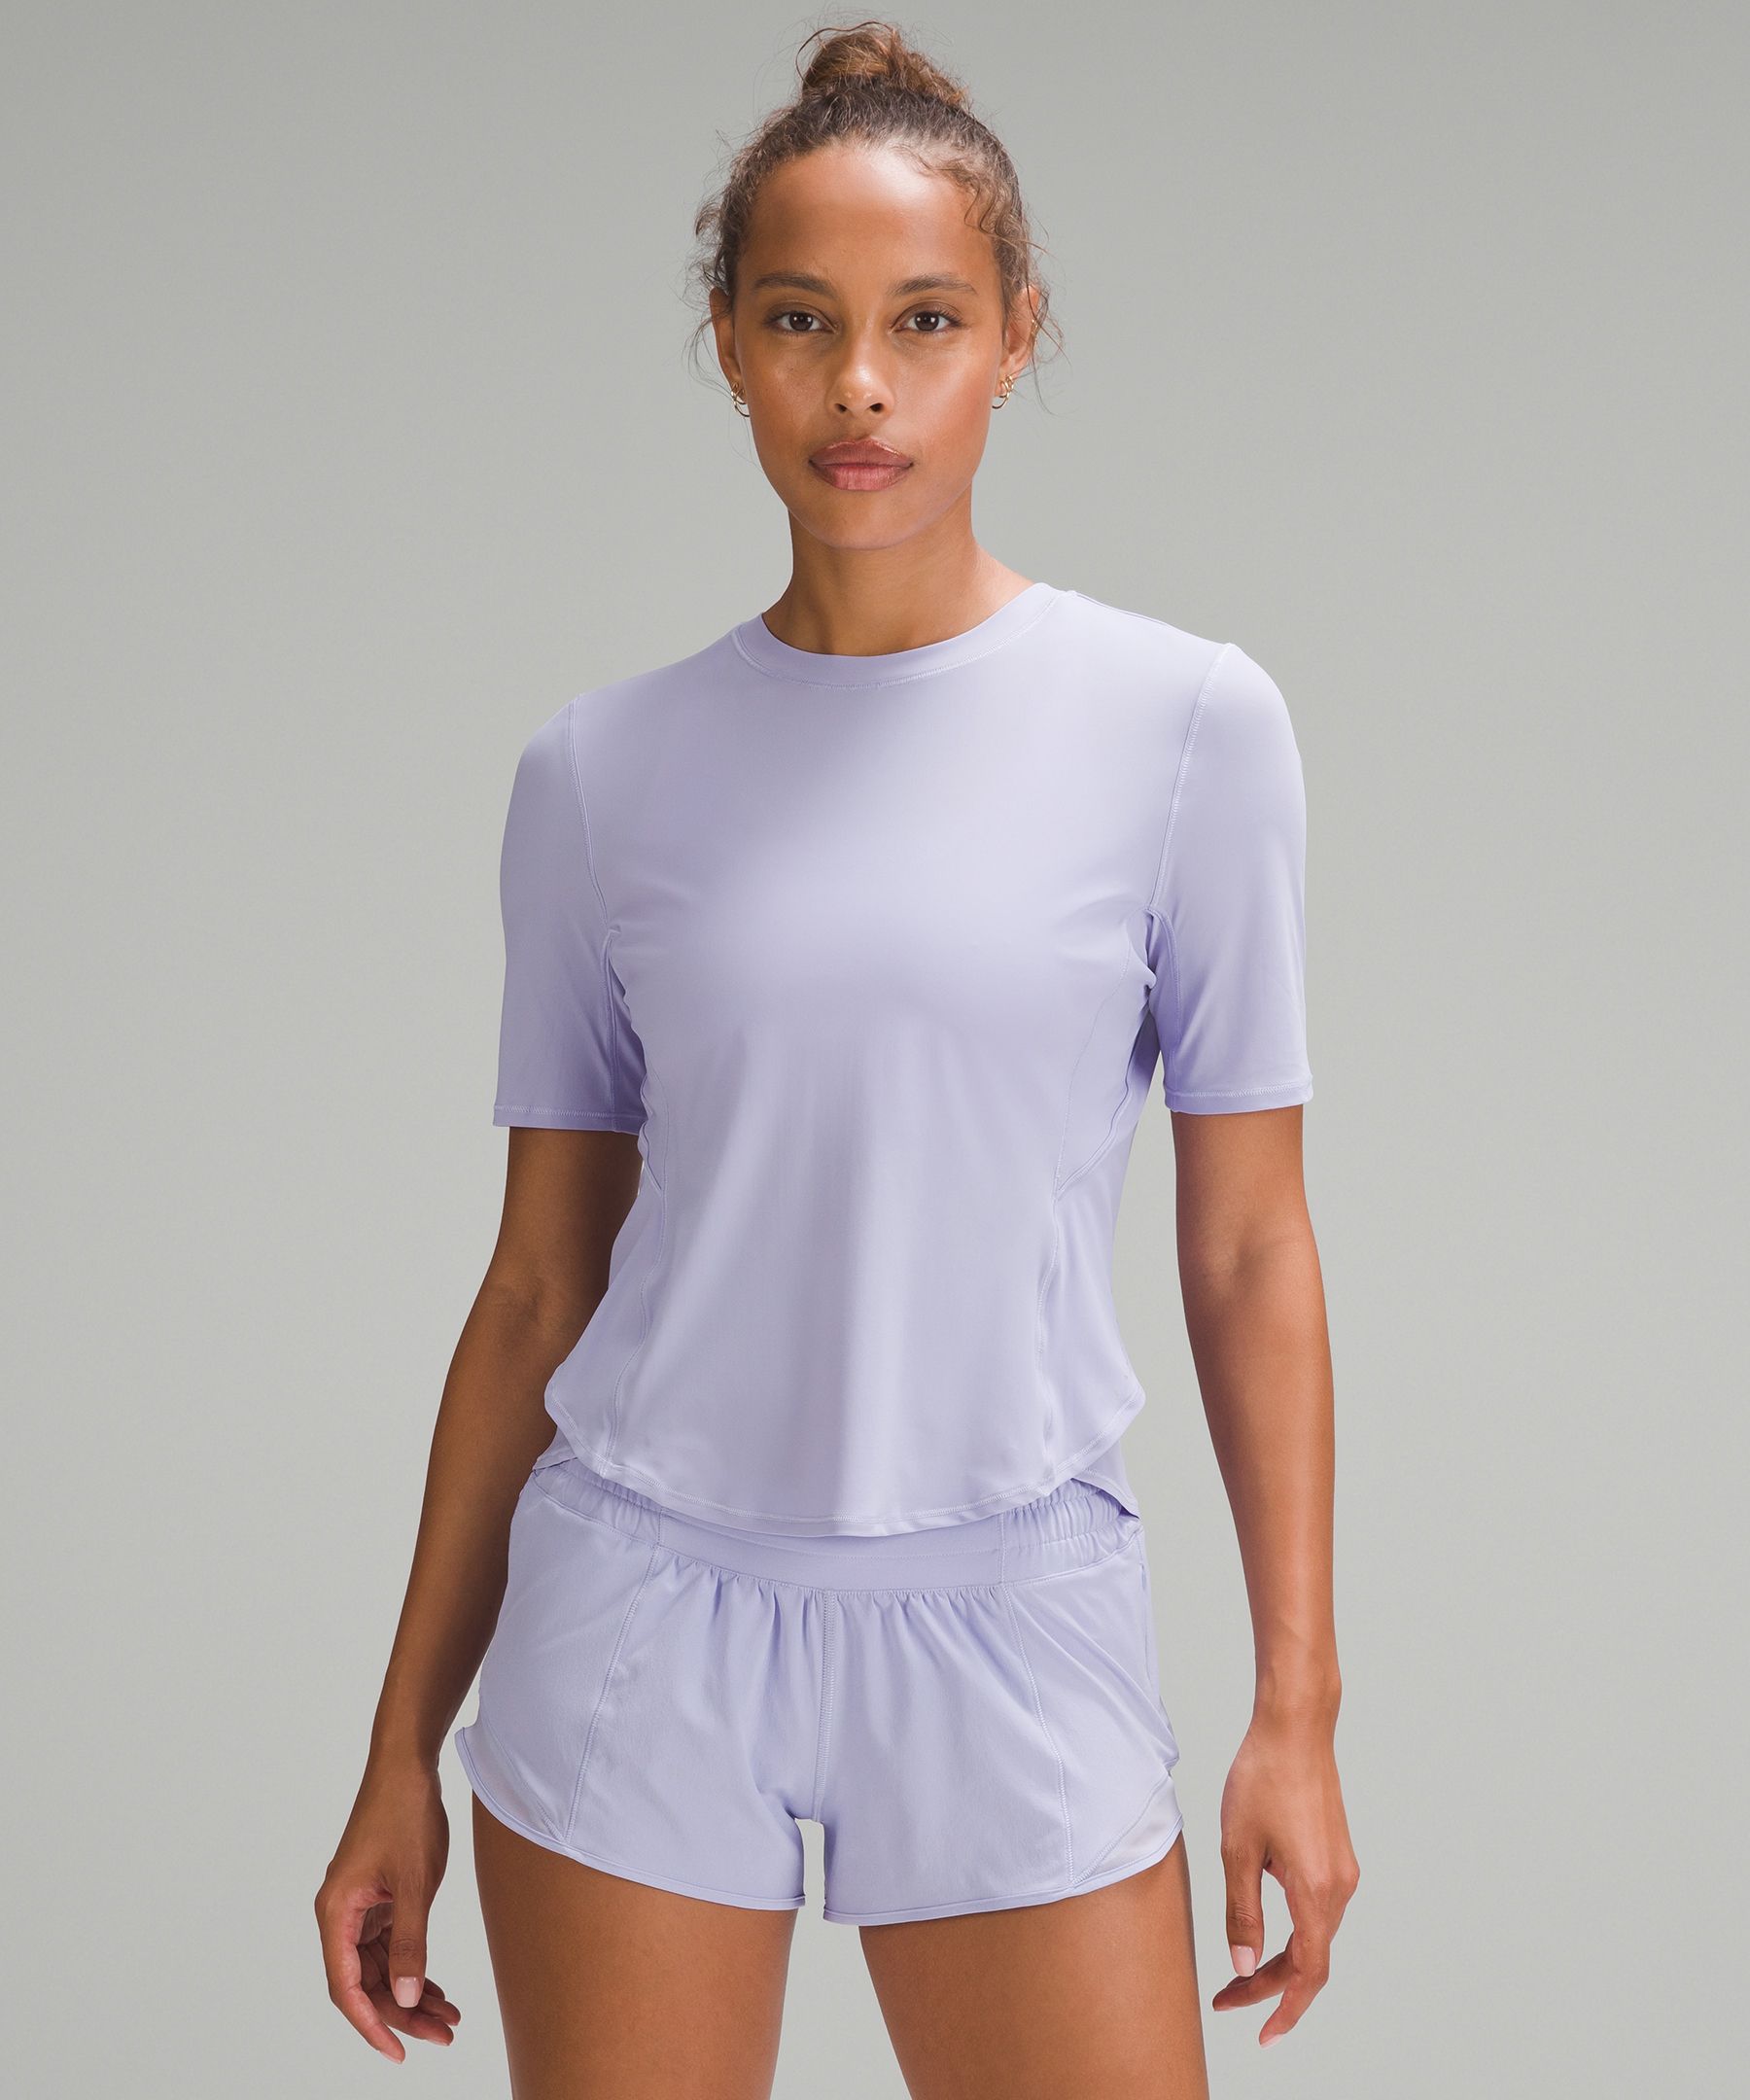 Lululemon UV Protection Fold-Over Running T-Shirt. 1